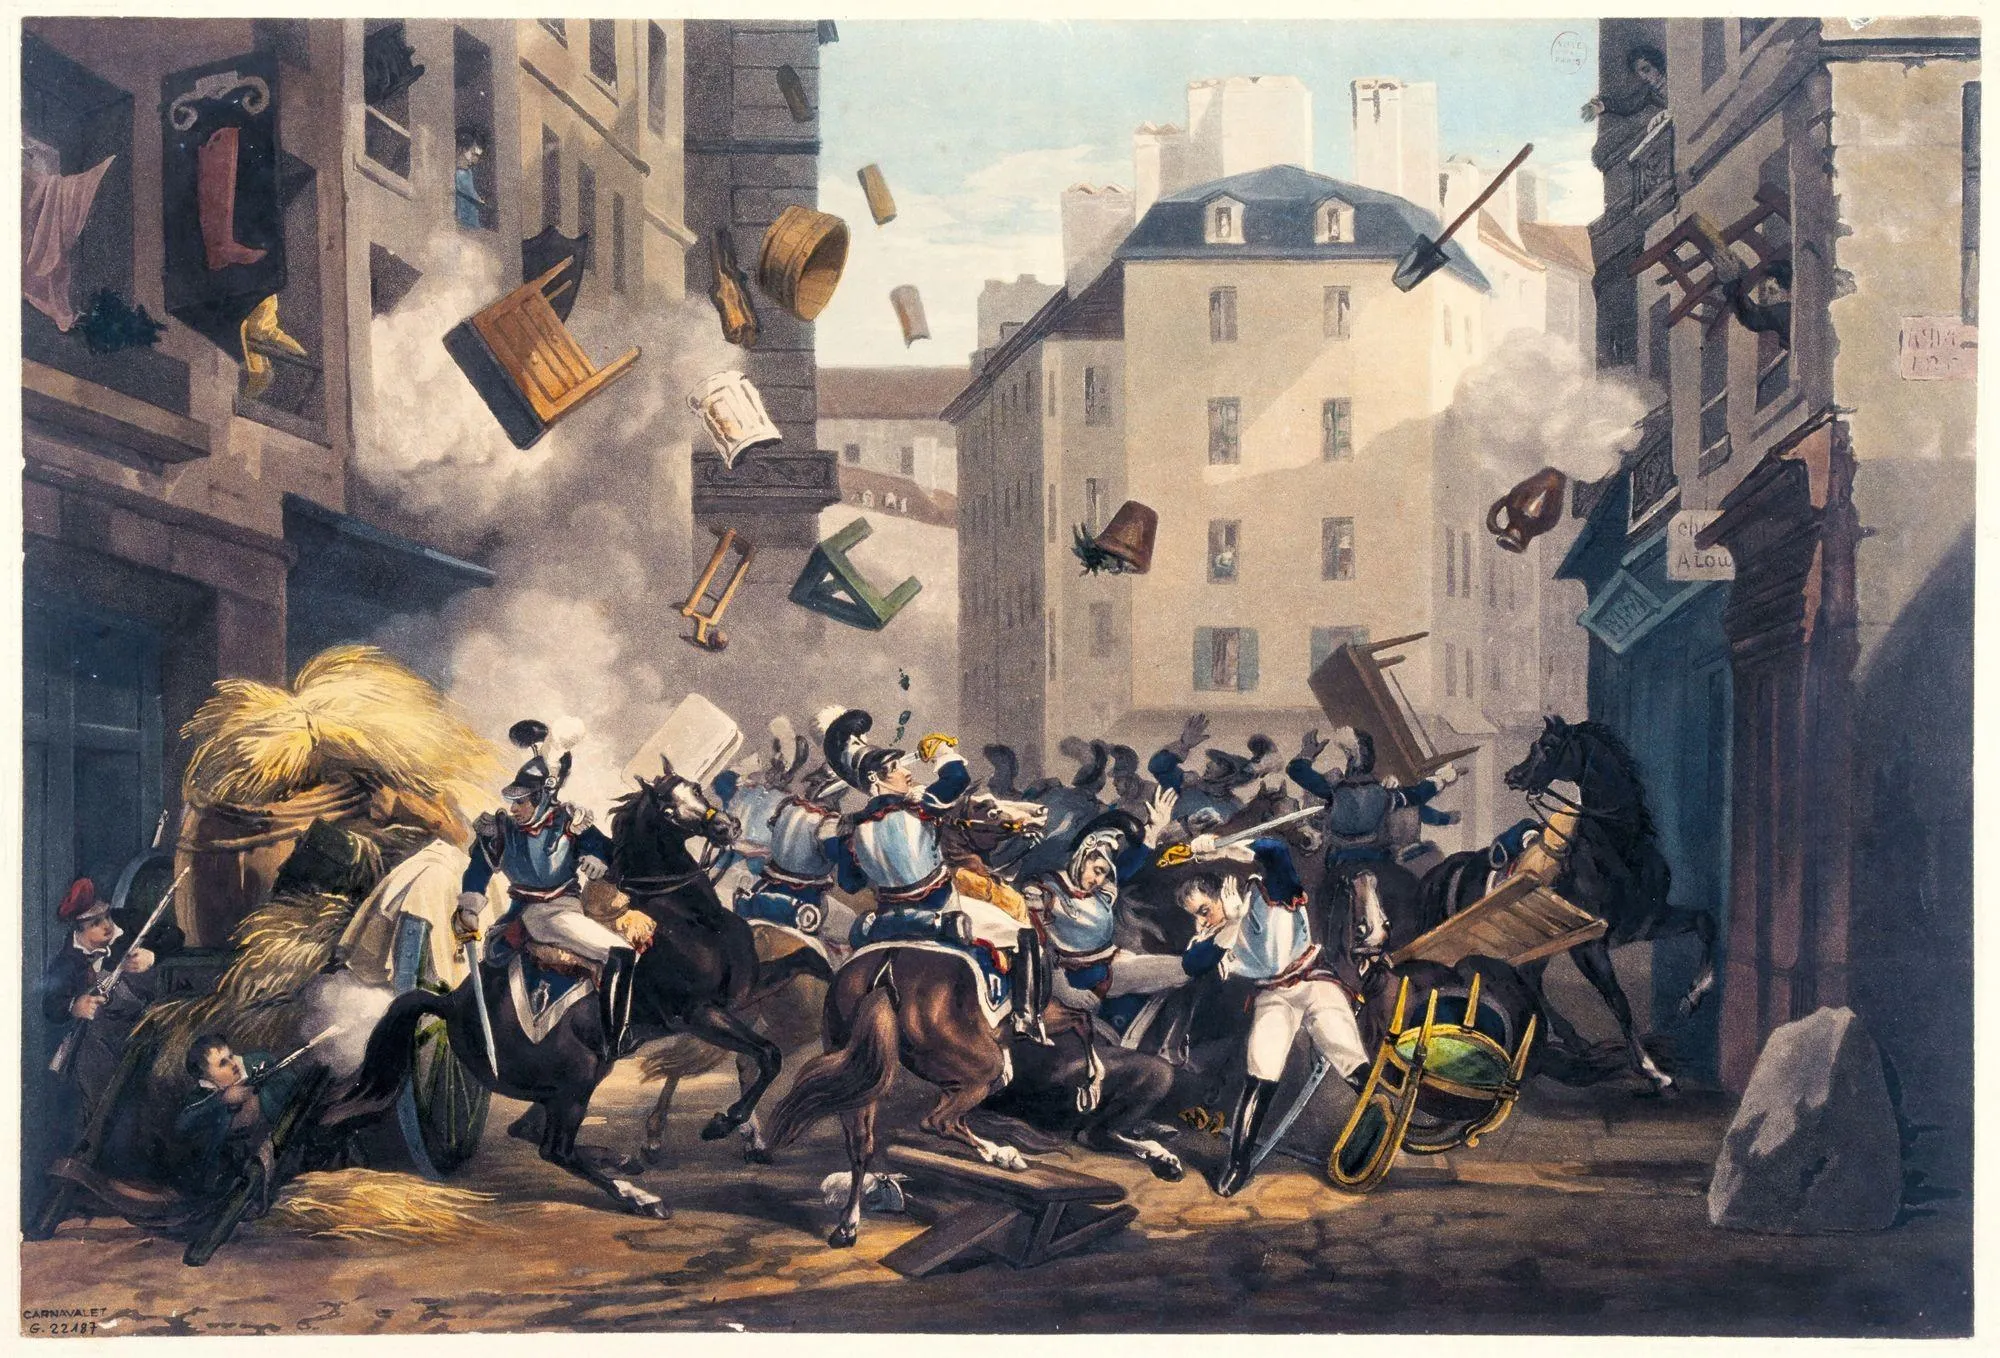 D'après Martinet, Combat dans la rue Saint-Antoine, v. 1830, aquatinte, 27 x 49 cm, musée Carnavalet, Paris.